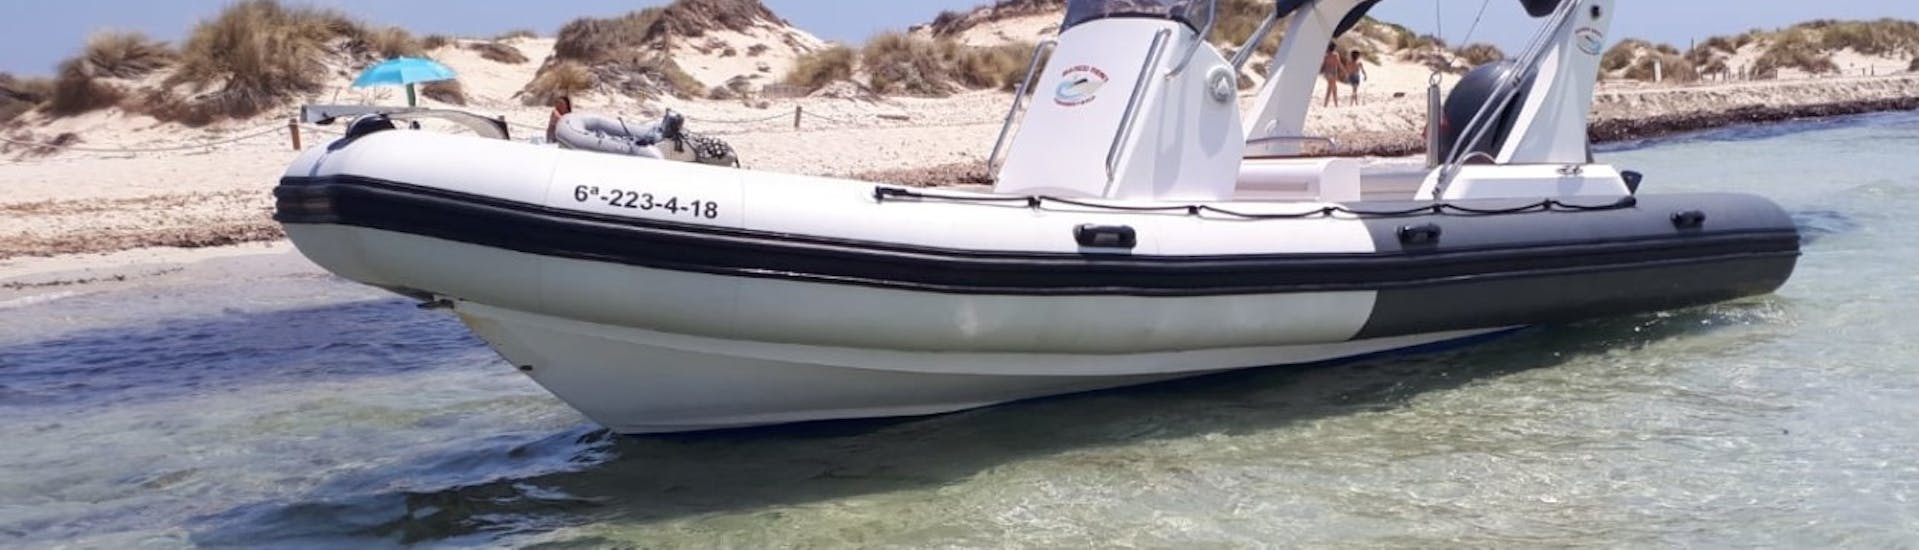 Ein lizenziertes Charterboot in Formentera für bis zu 12 Personen mit Barco Rent Formentera.